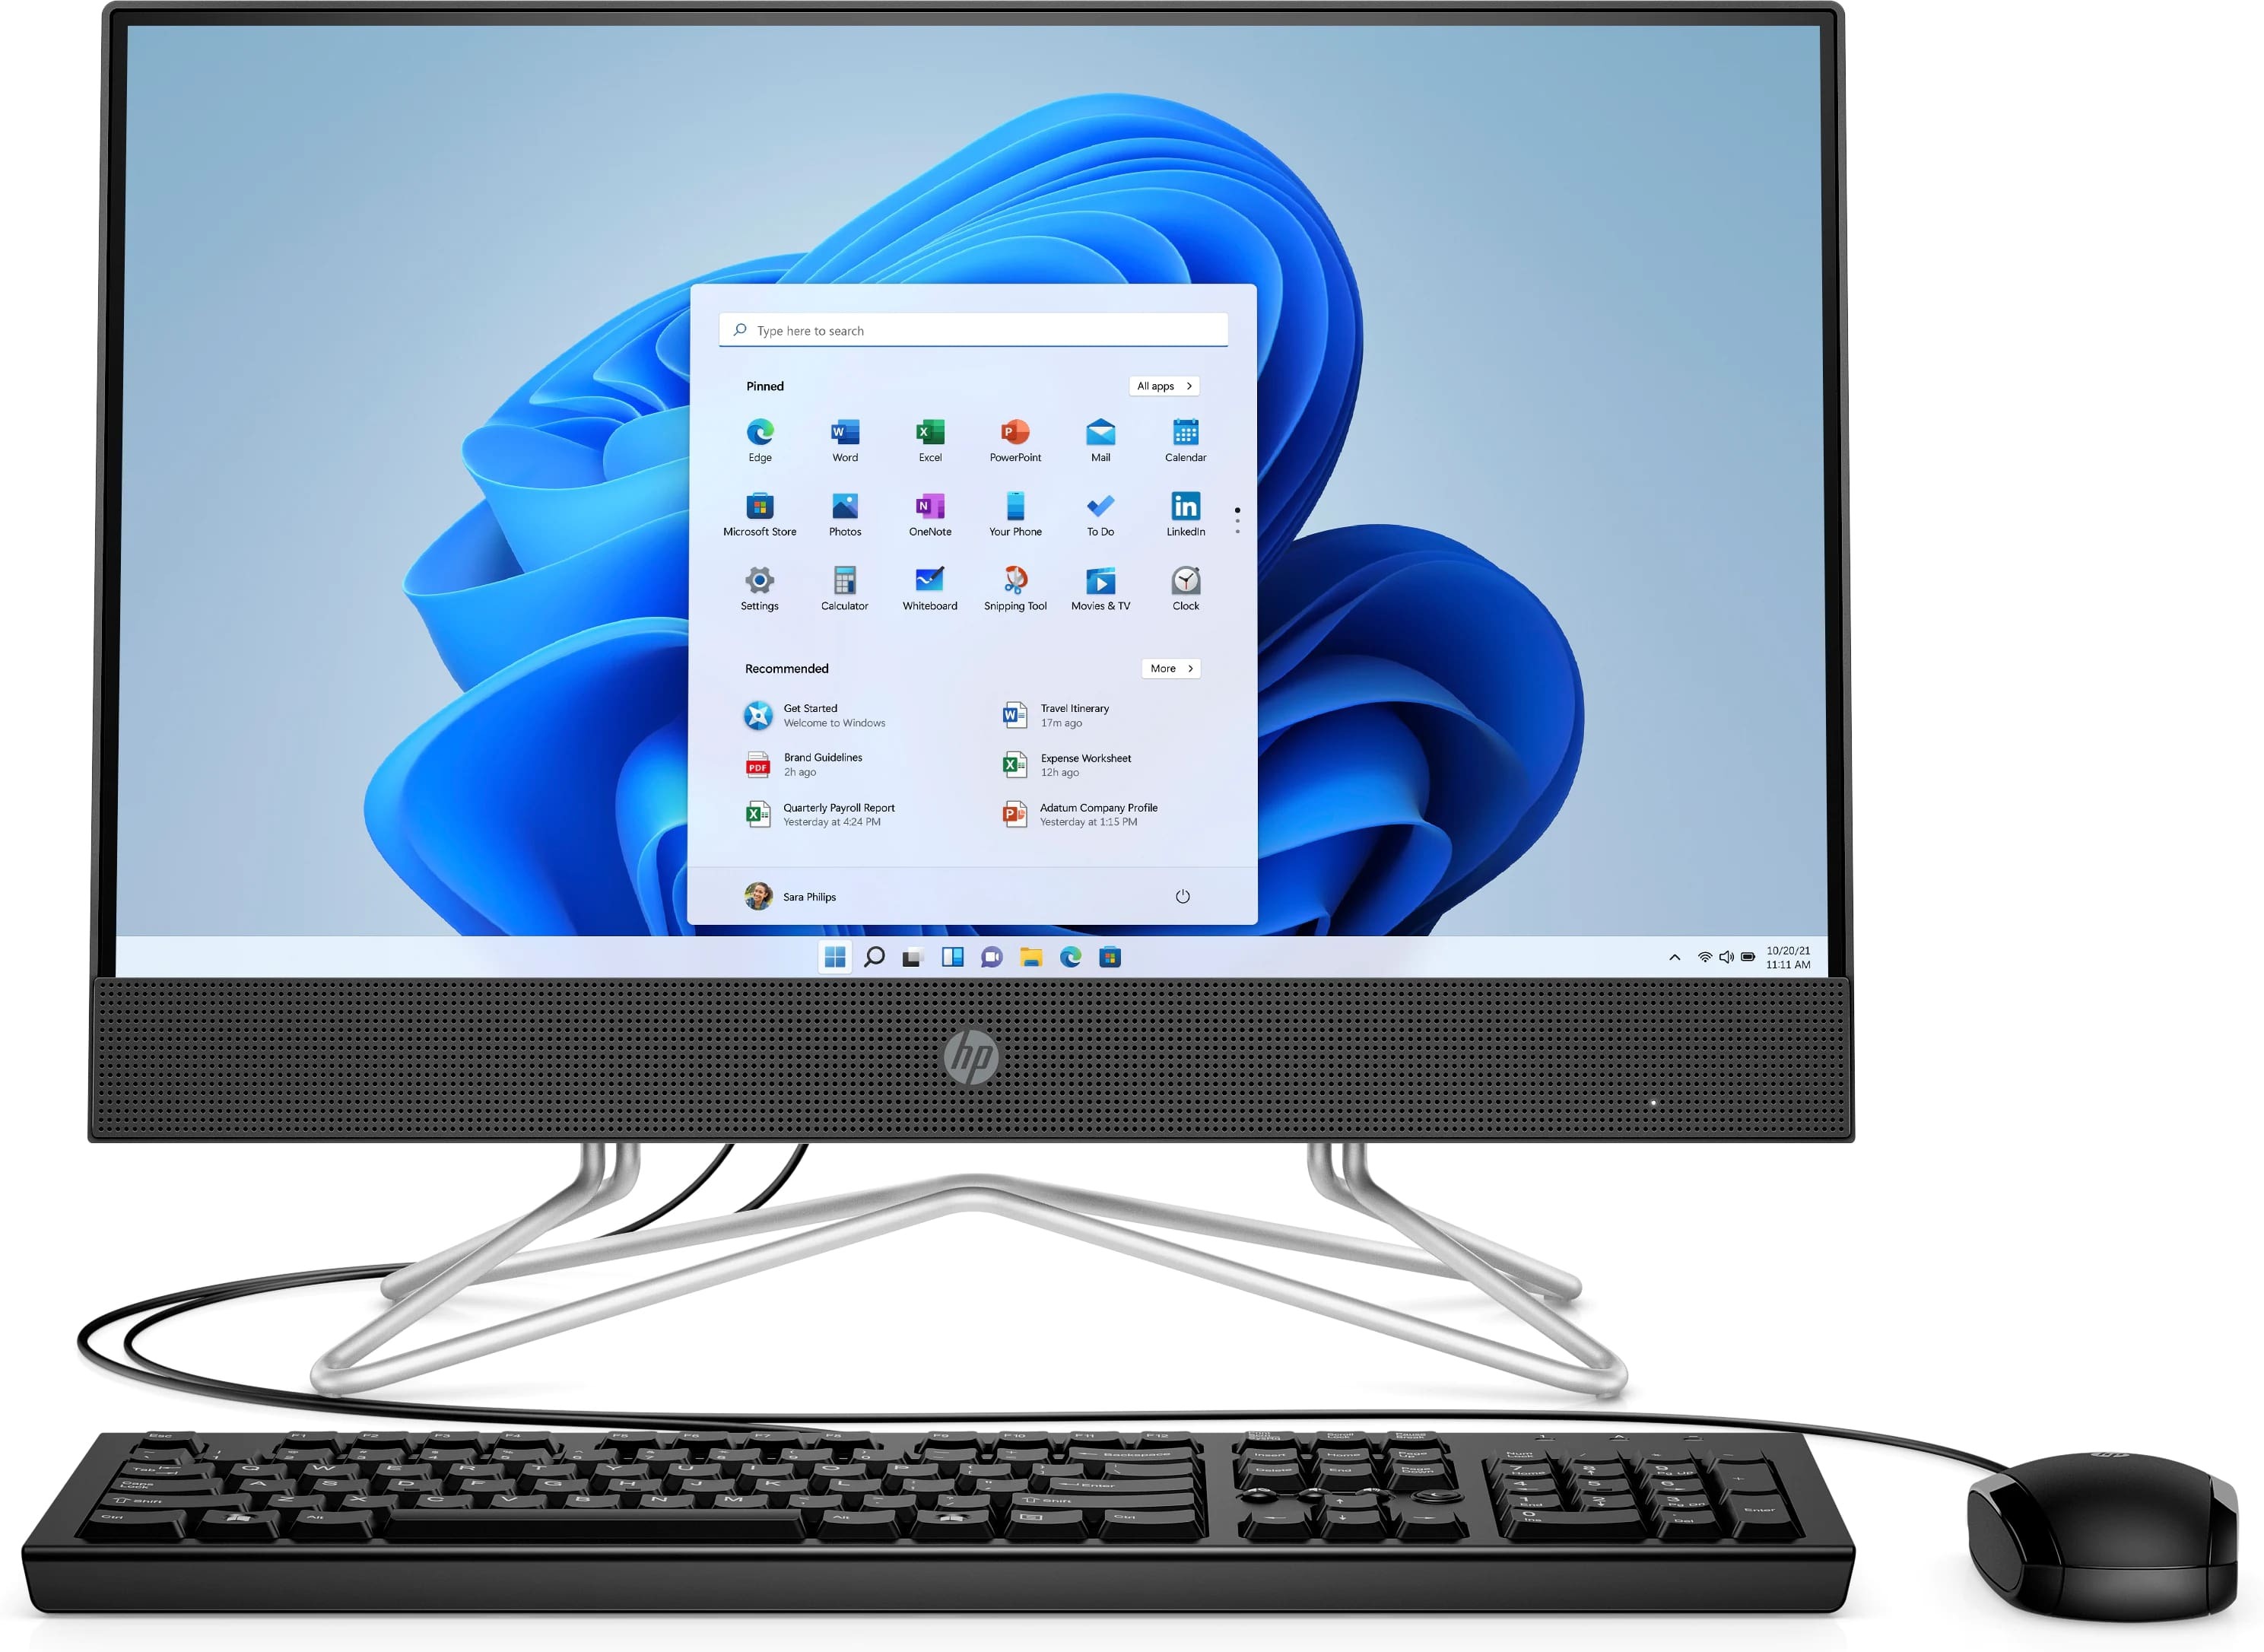 Máy tính để bàn HP All In One 200 Pro G4 633S9PA - Intel core i5-10210U, 8GB RAM, SSD 256GB, Intel UHD Graphics, 21.5 inch